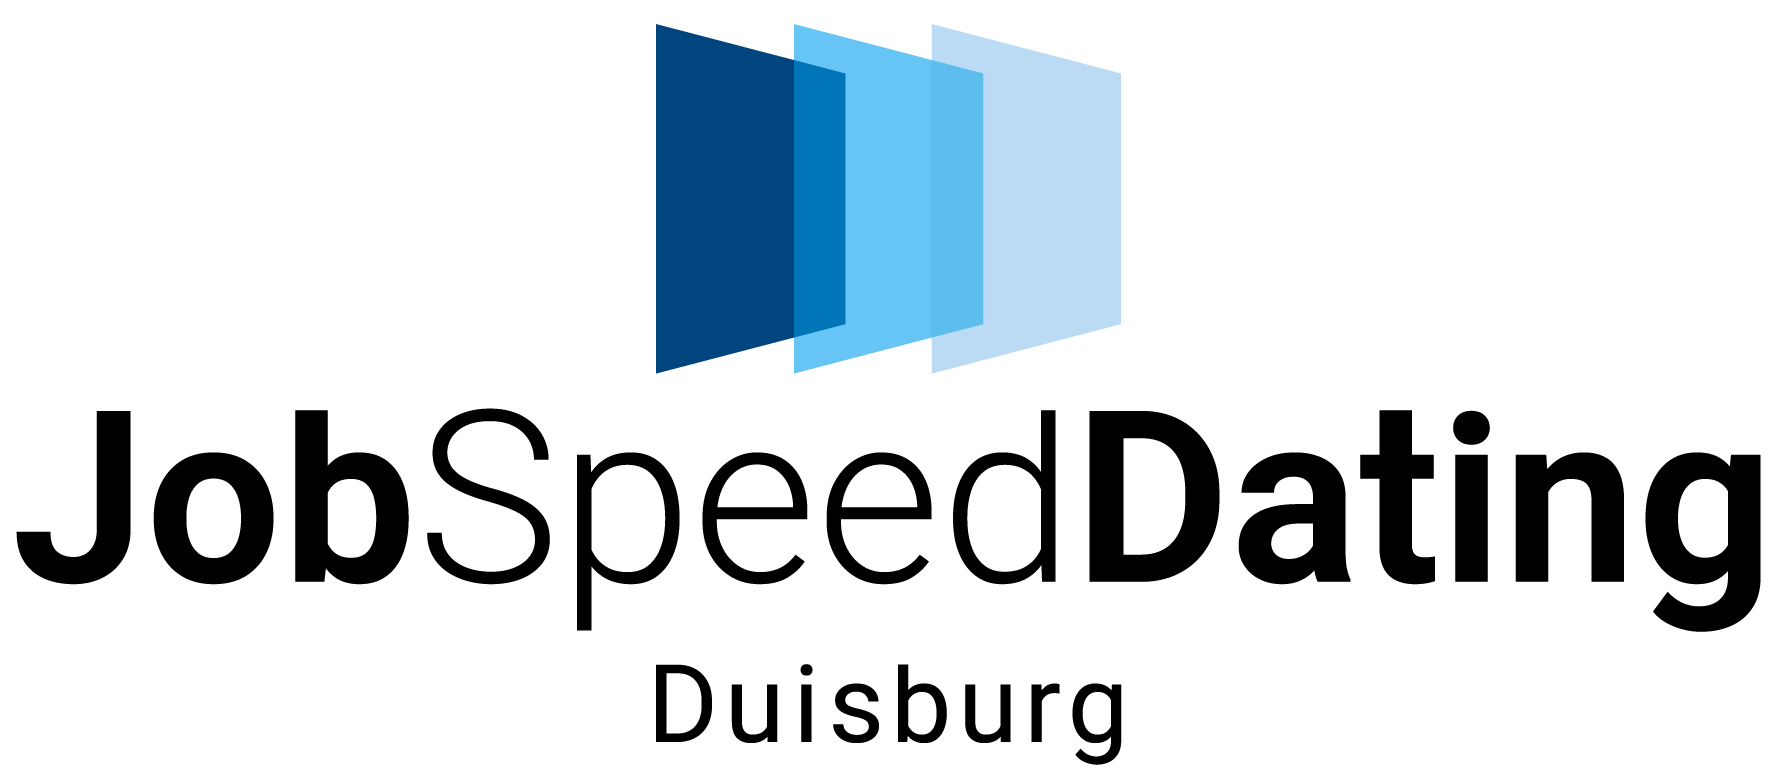 jsd-duisburg-logo-final2807-rgb_0.jpg